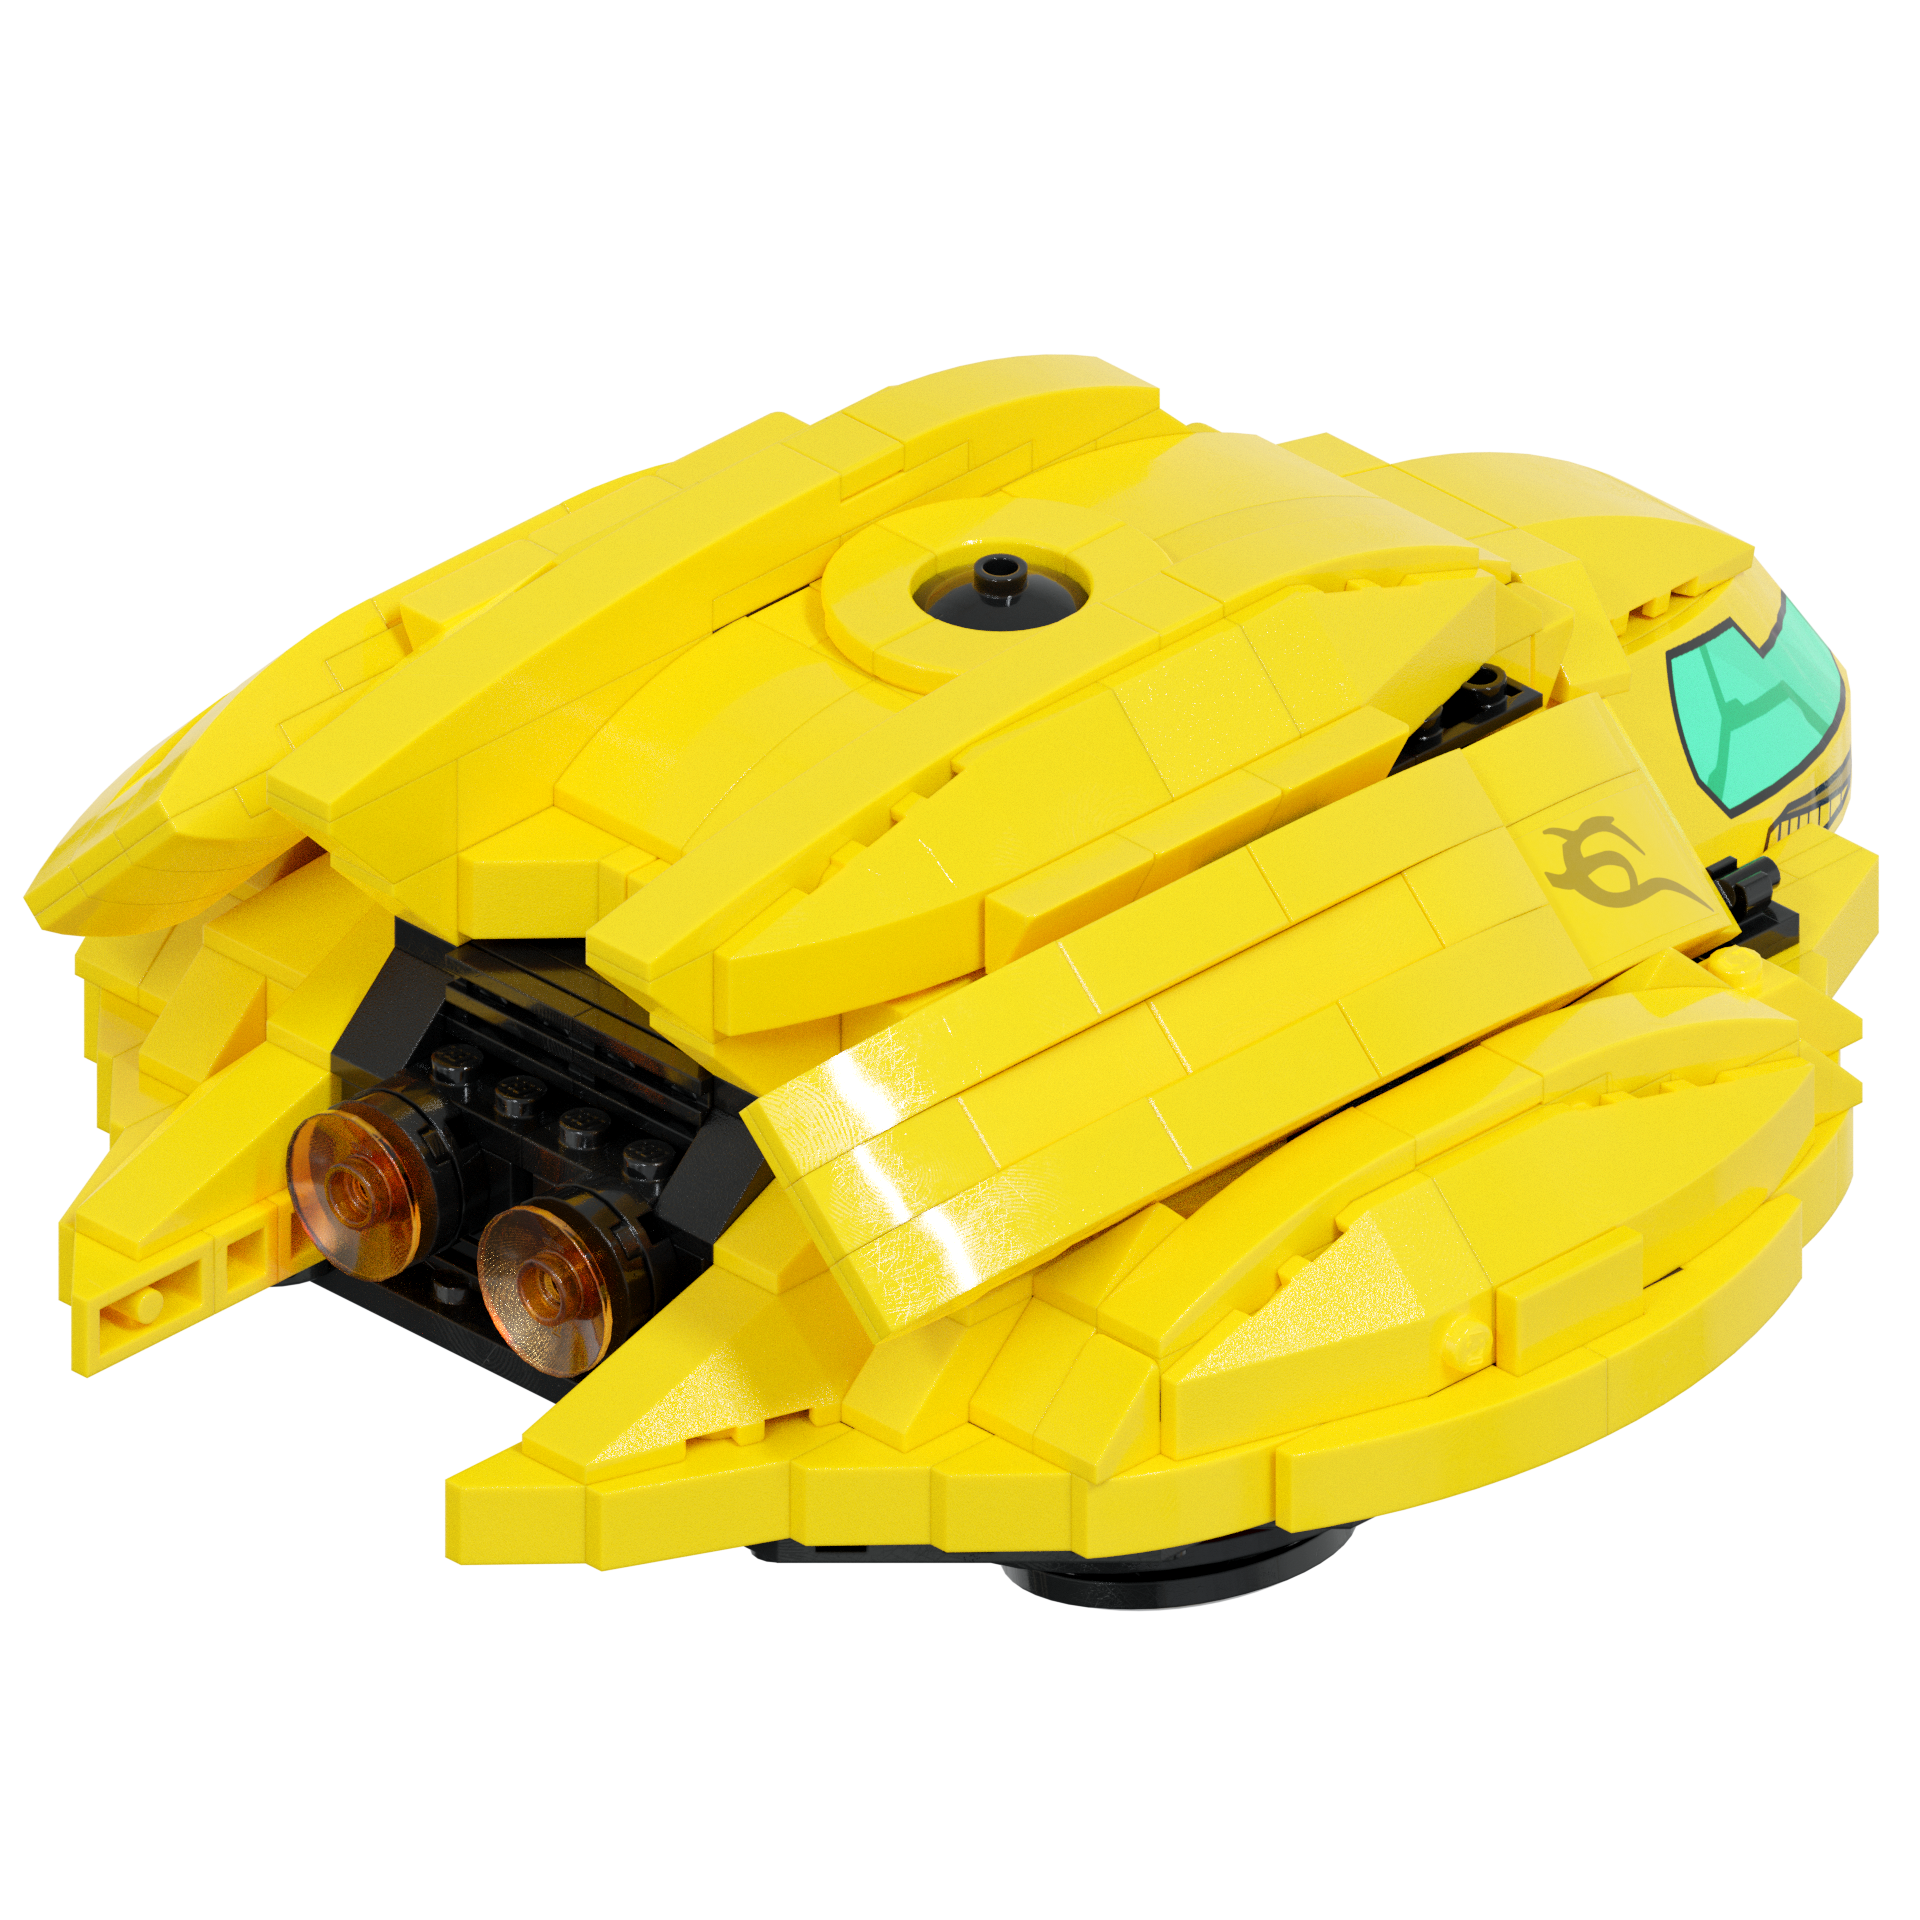 afskaffe væsentligt Bering strædet LEGO Samus Aran's Gunship Instructions - ky-e bricks